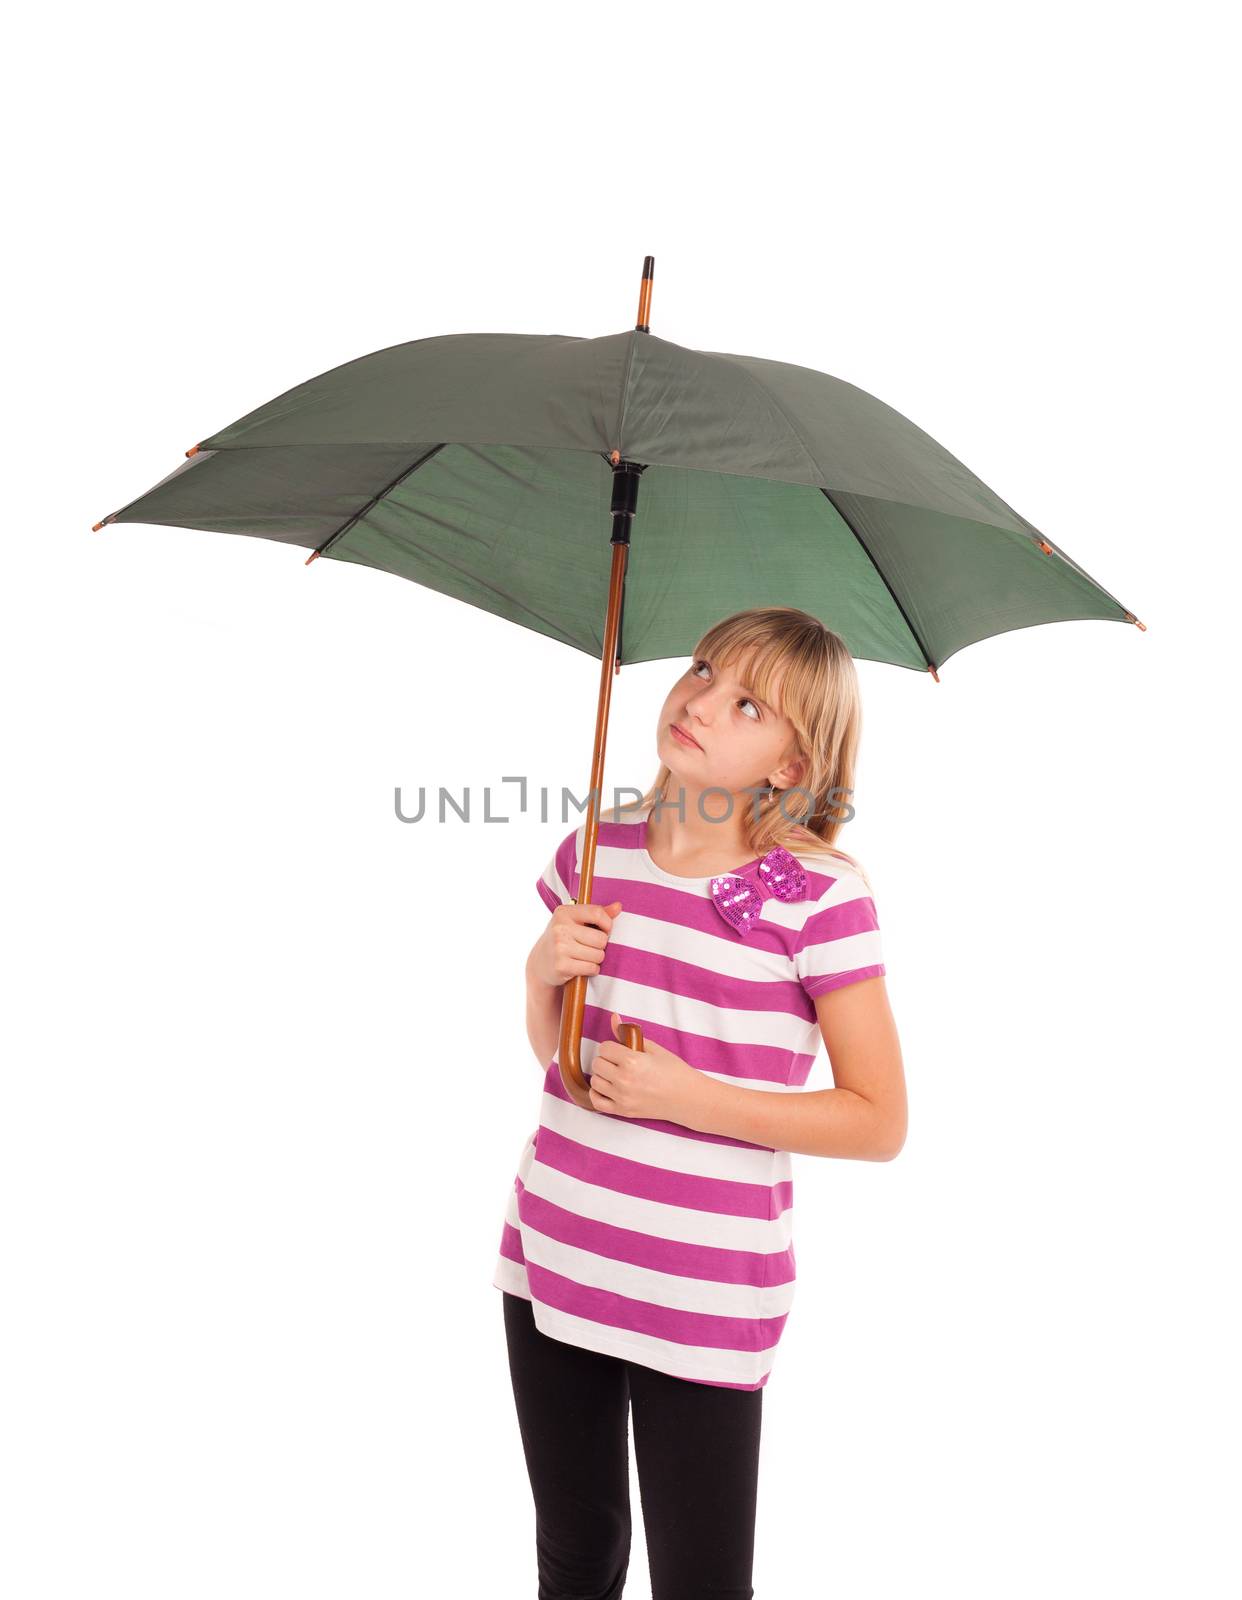 Girl with umbrella by bandika